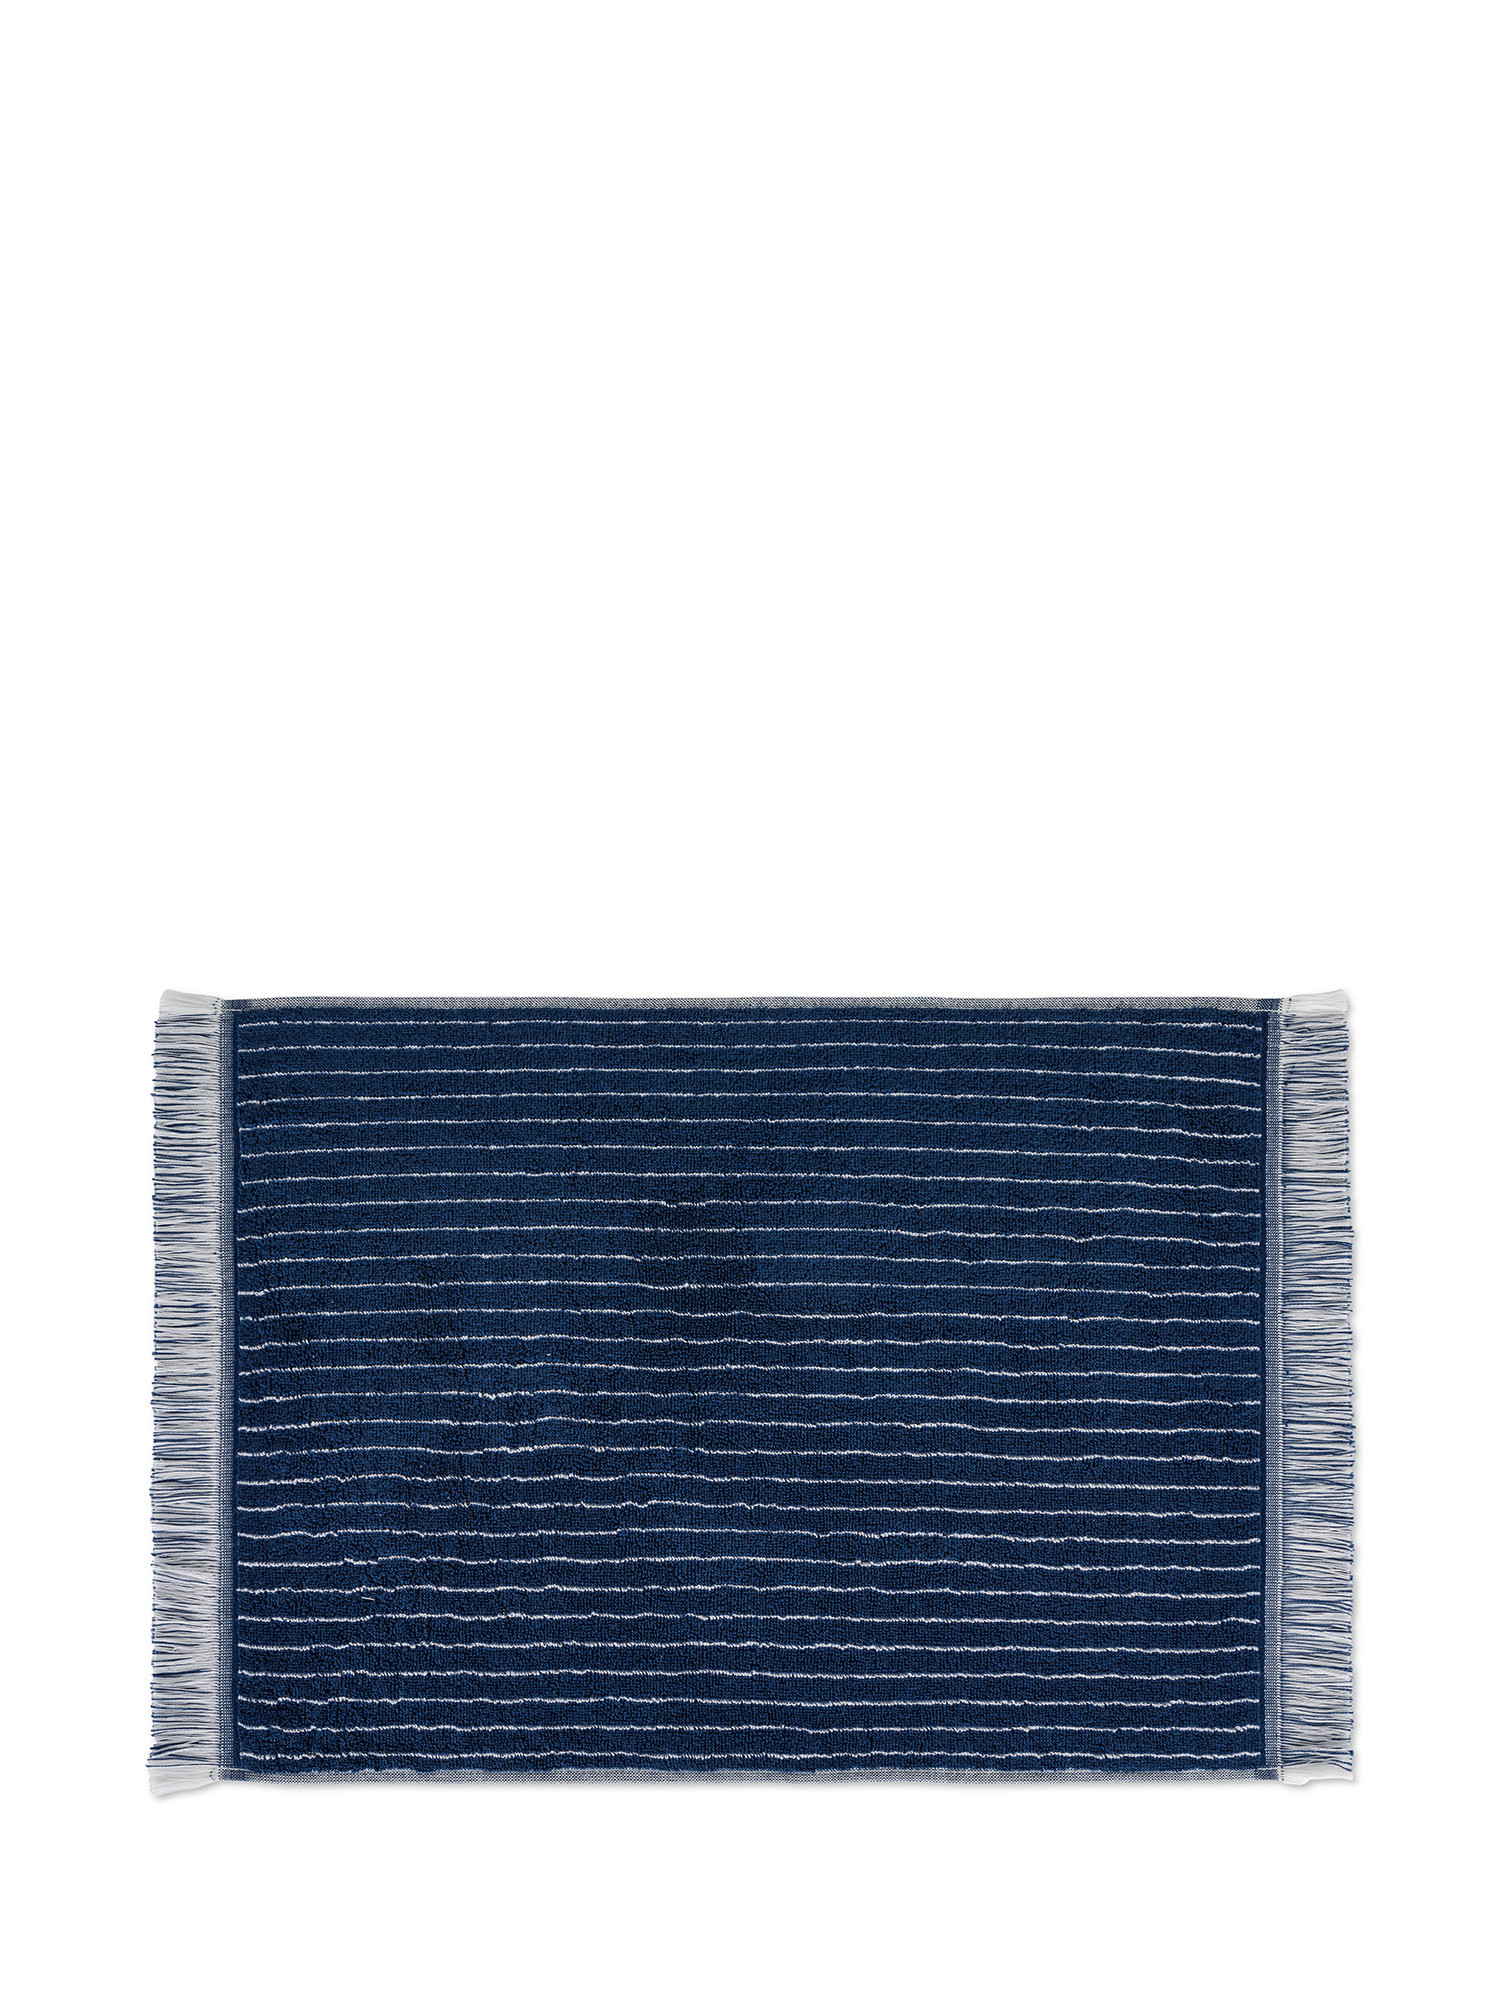 Asciugamano di puro cotone tinto in filo motivo riga gessata, Blu, large